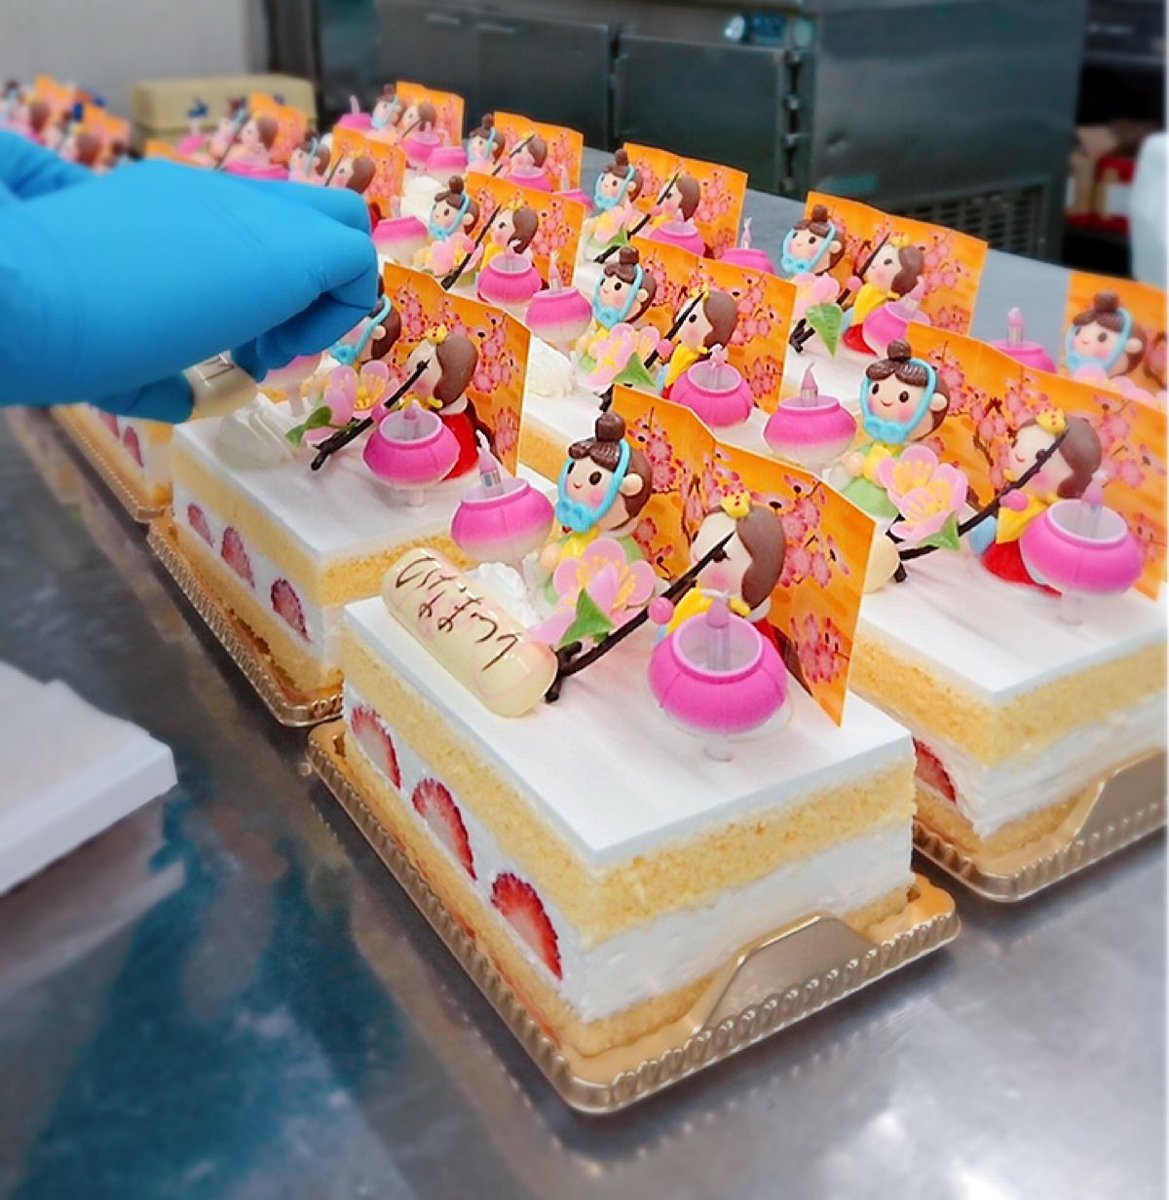 かにや 公式 Twitterren 製造の様子 洋菓子部 今朝の洋菓子部はたくさんの四角いケーキに包まれています 一体何のケーキでしょう 正解は 雛ケーキ 2 0円 税込 本日から3 3 火 までの3日間数量限定販売です 今年のひな祭りは可愛い癒しのケーキで